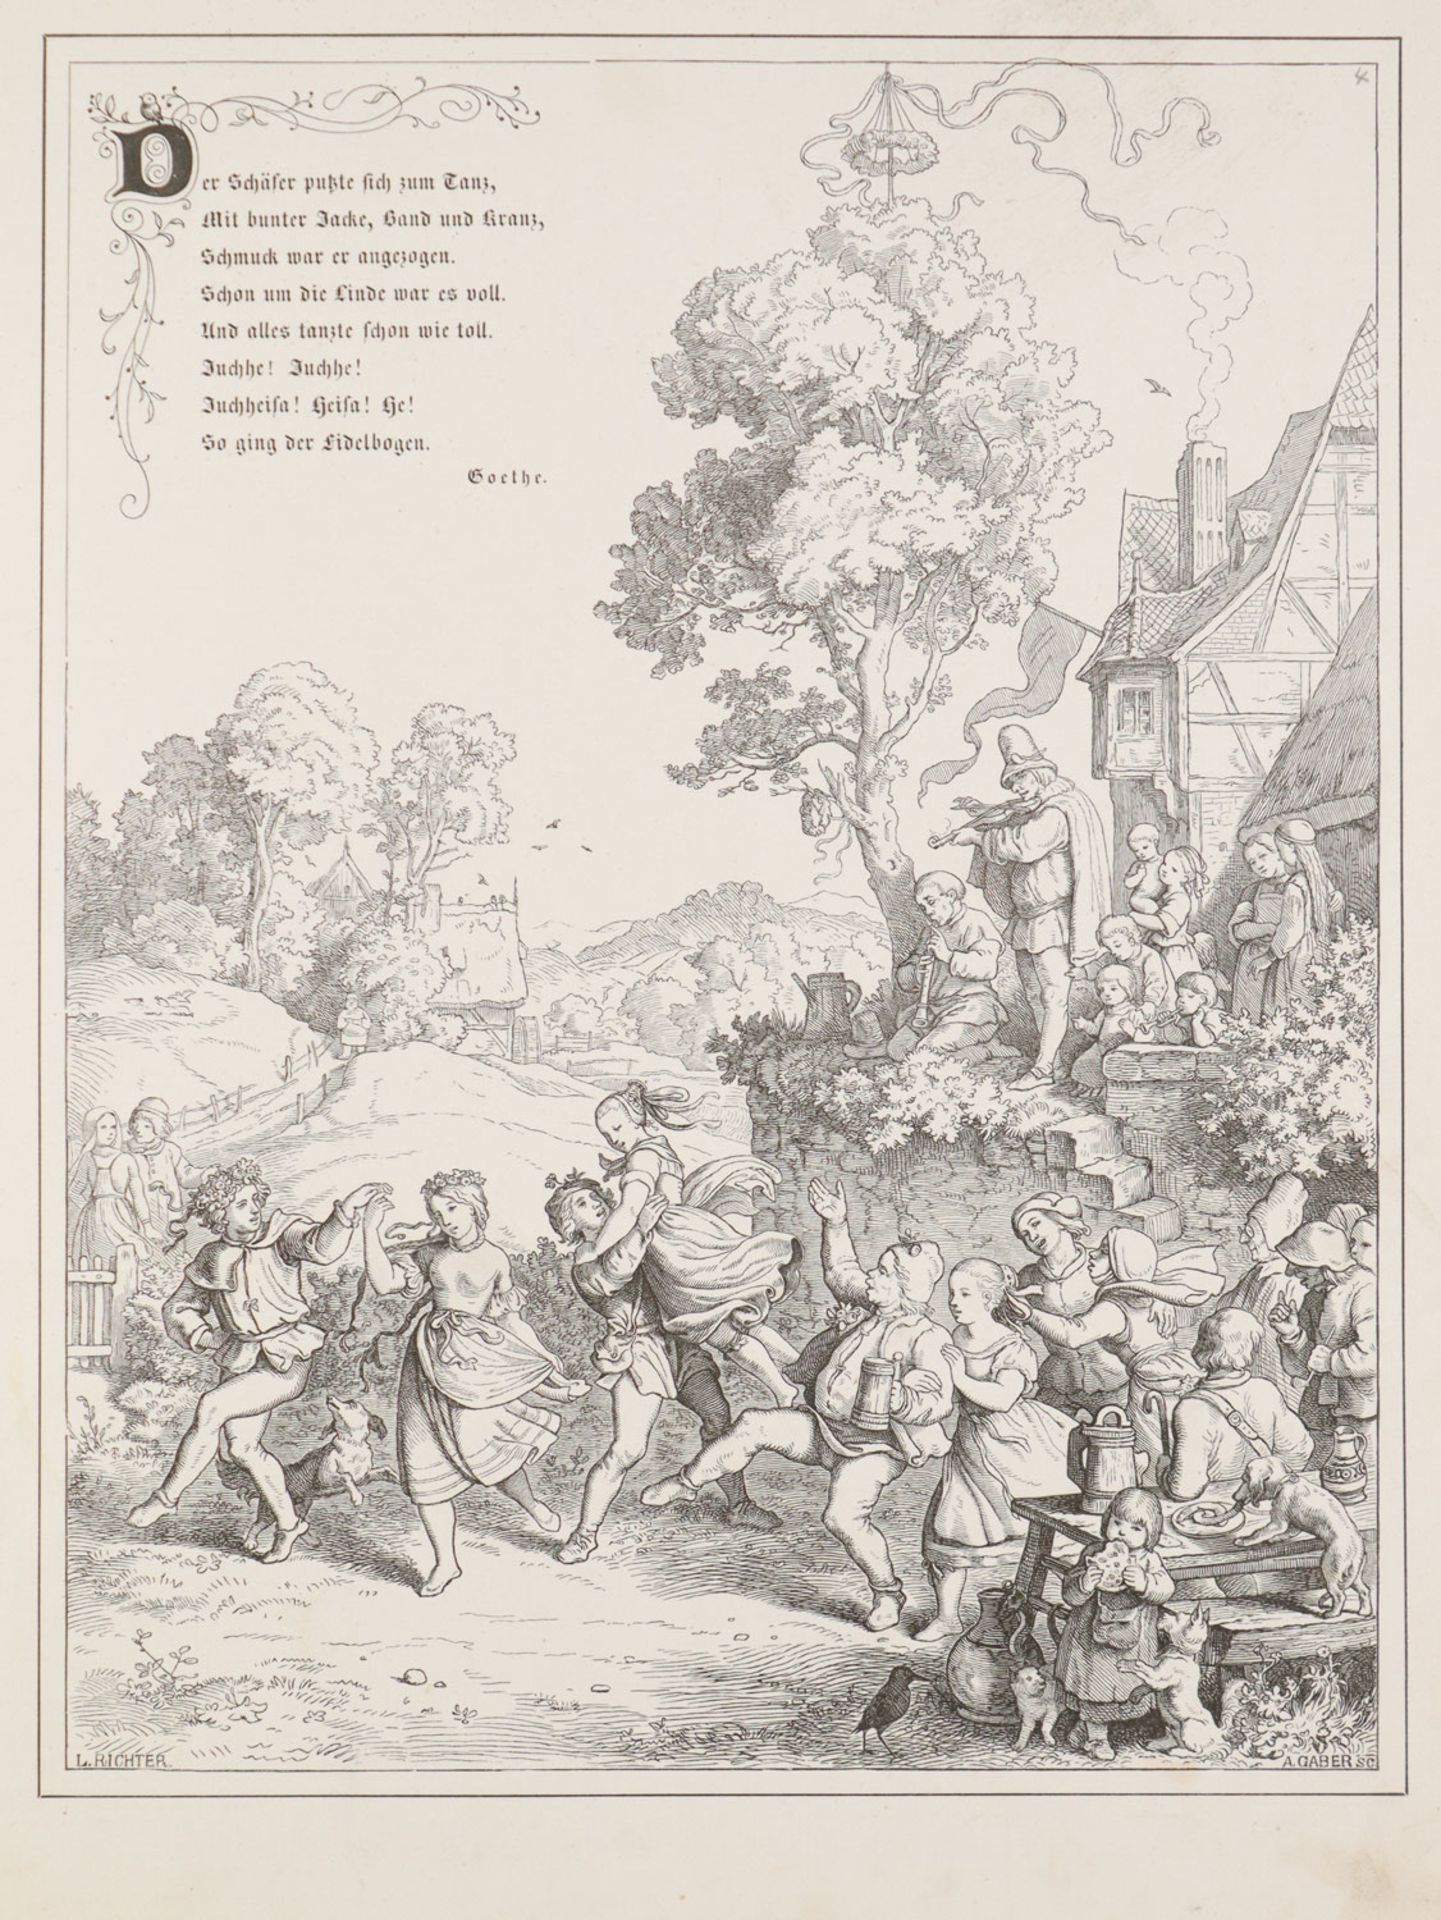 Richter, Ludwig - "Beschauliches und Erbauliches" - Image 3 of 5